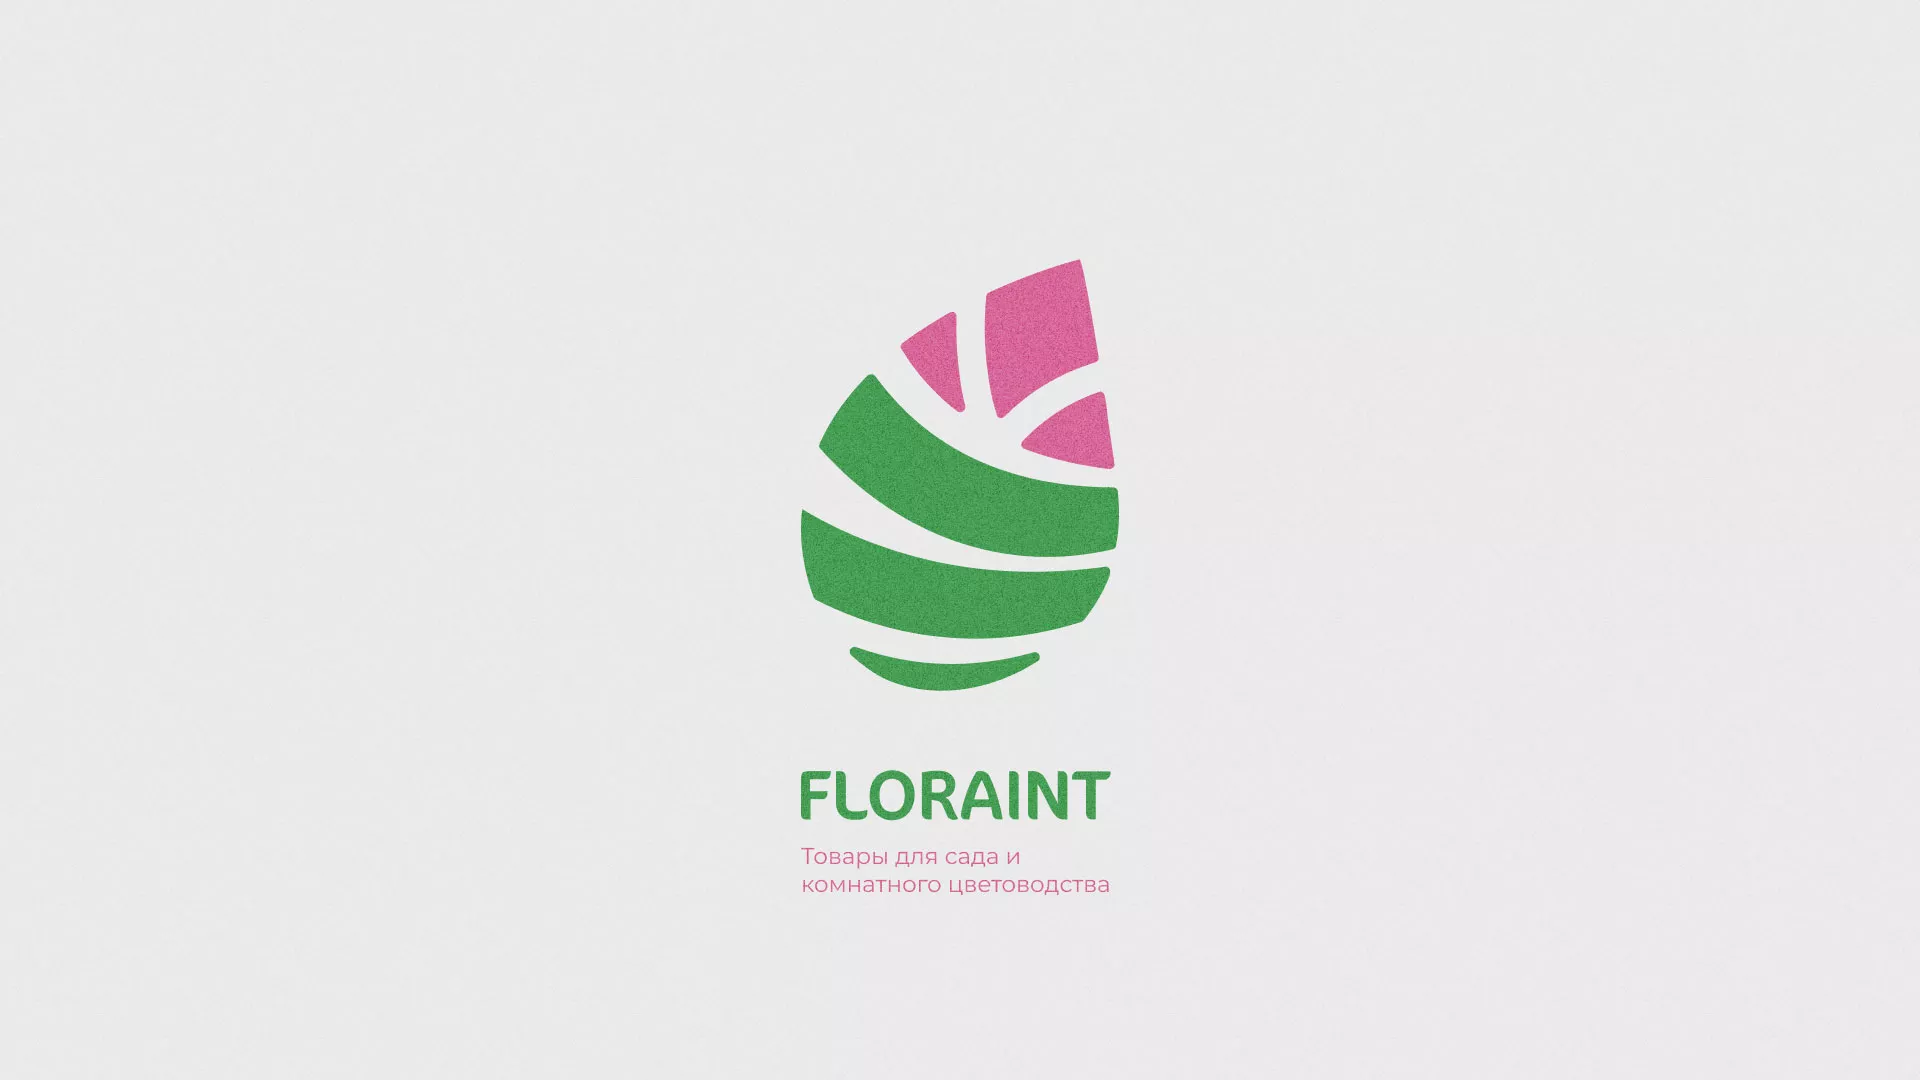 Разработка оформления профиля Instagram для магазина «Floraint» в Мамоново